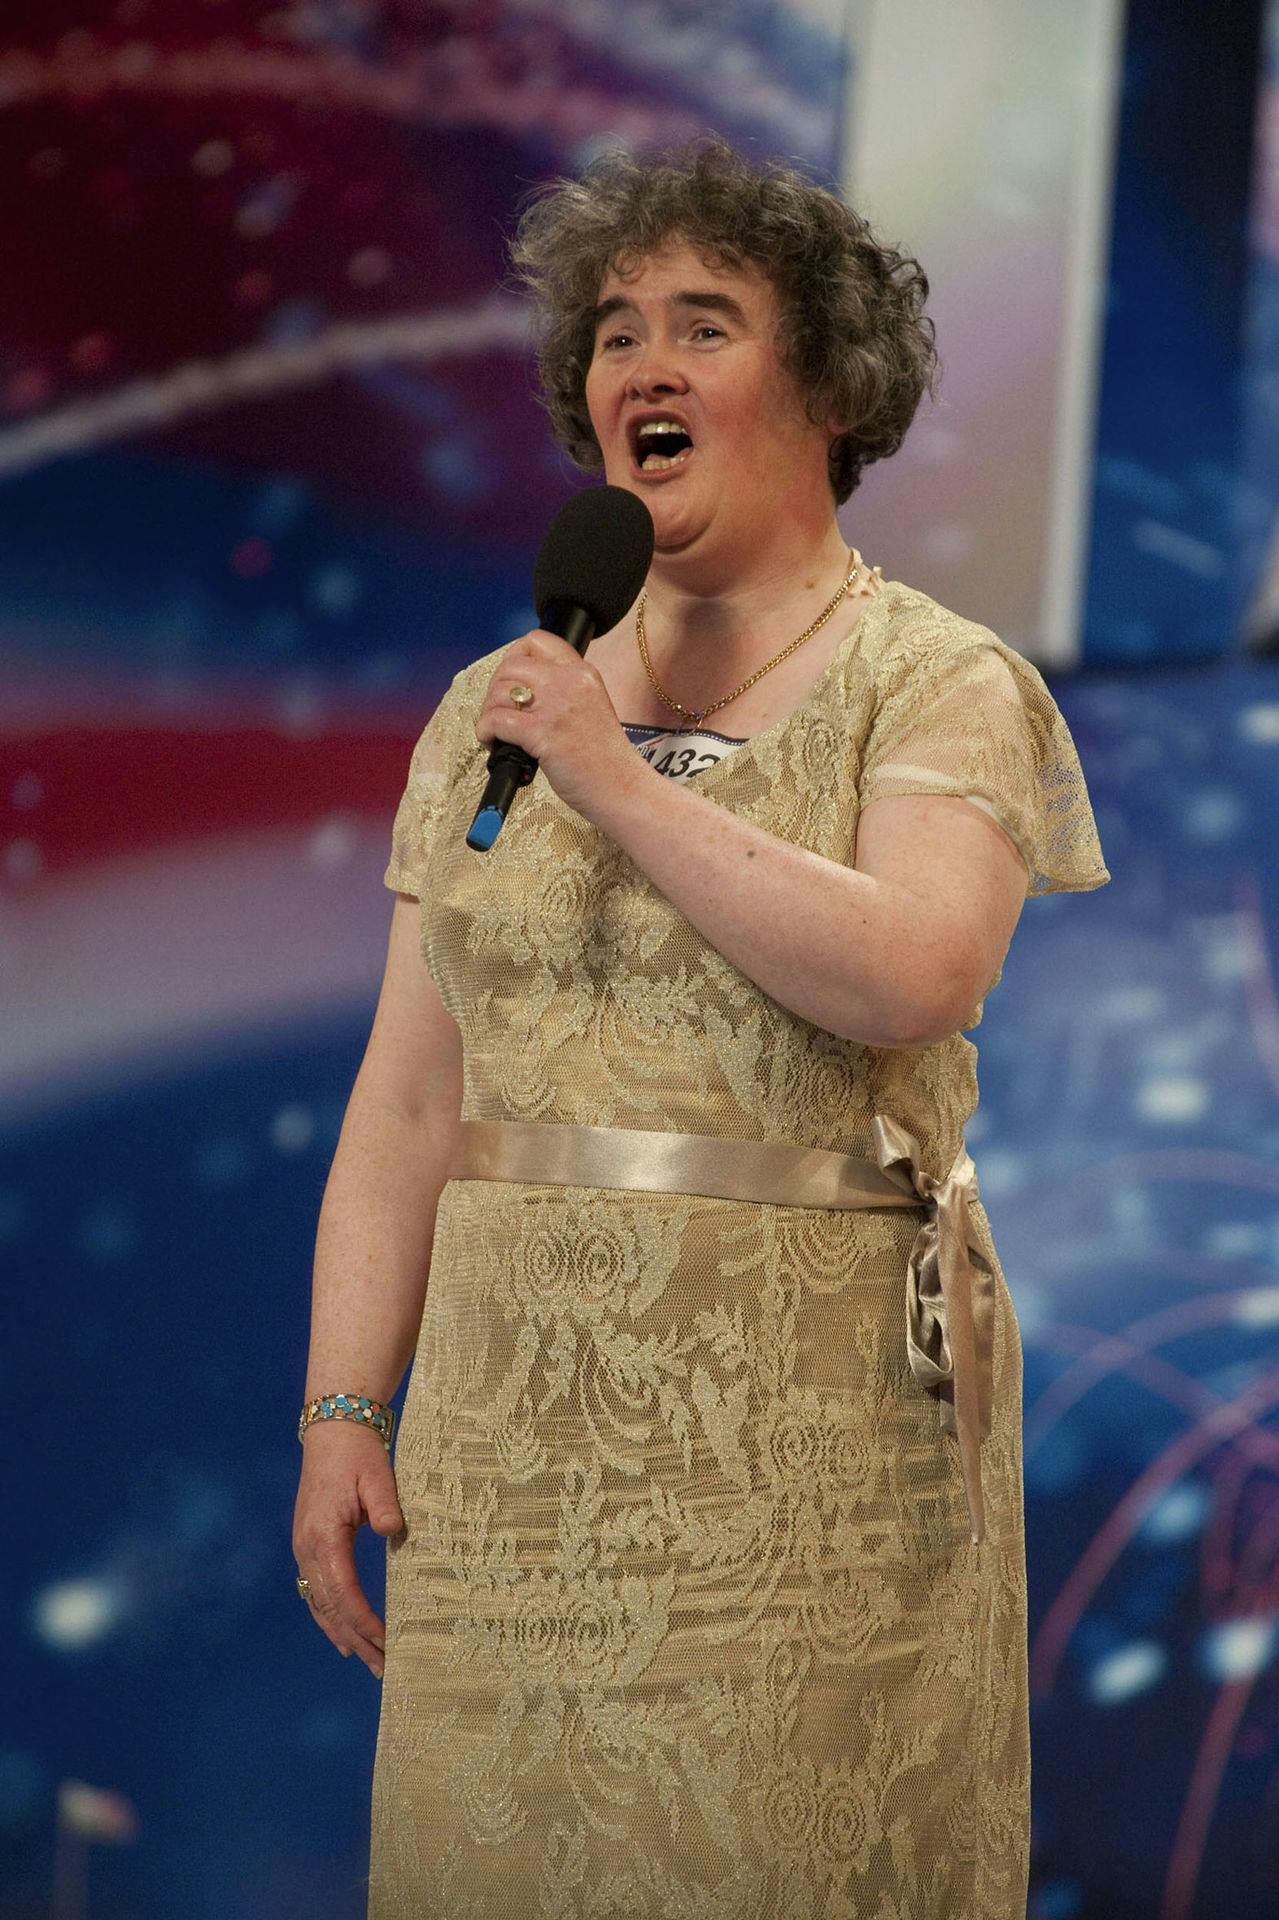 Sådan så Susan Boyle ud, da hun tog verden med storm i "Britain's Got Talent" tilbage i 2009.
